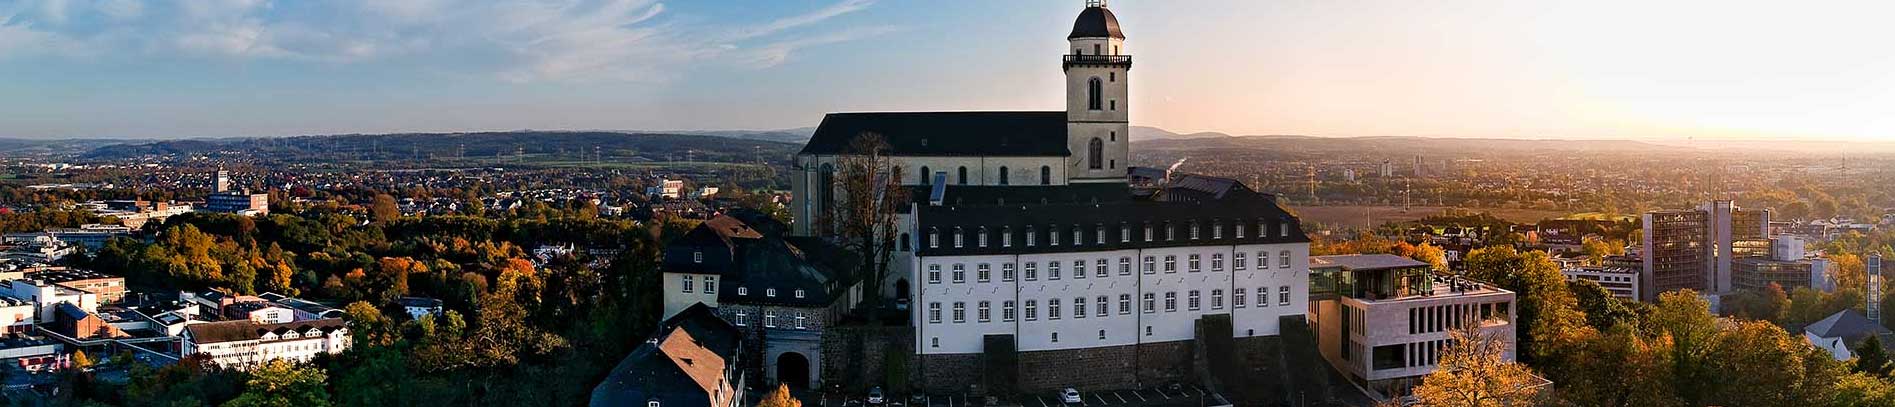 Blick auf die Stadt Siegburg